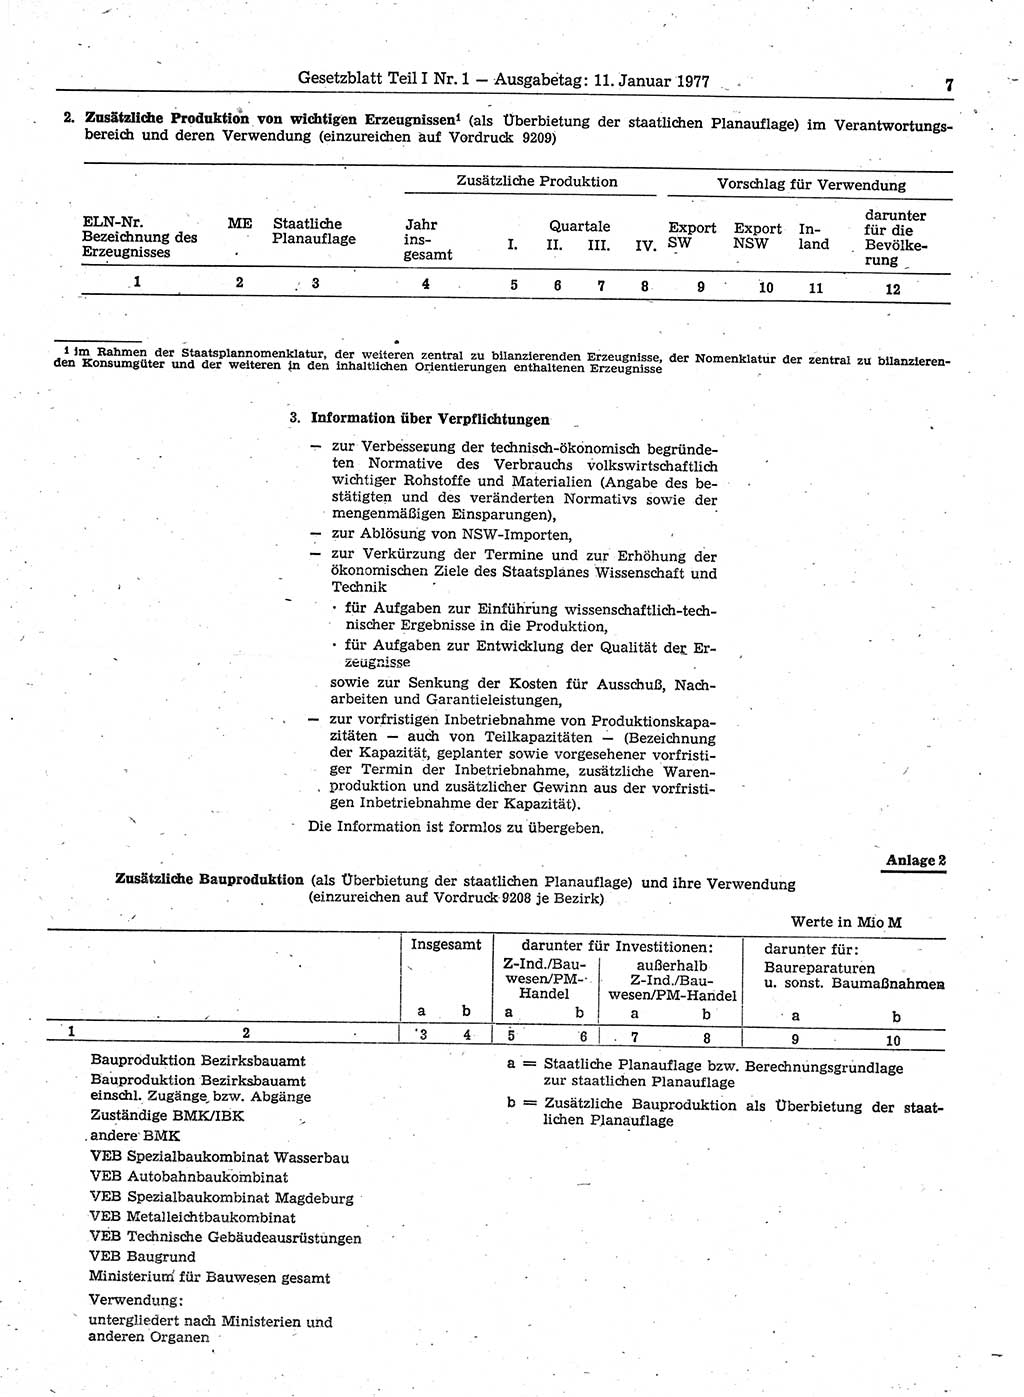 Gesetzblatt (GBl.) der Deutschen Demokratischen Republik (DDR) Teil Ⅰ 1977, Seite 7 (GBl. DDR Ⅰ 1977, S. 7)